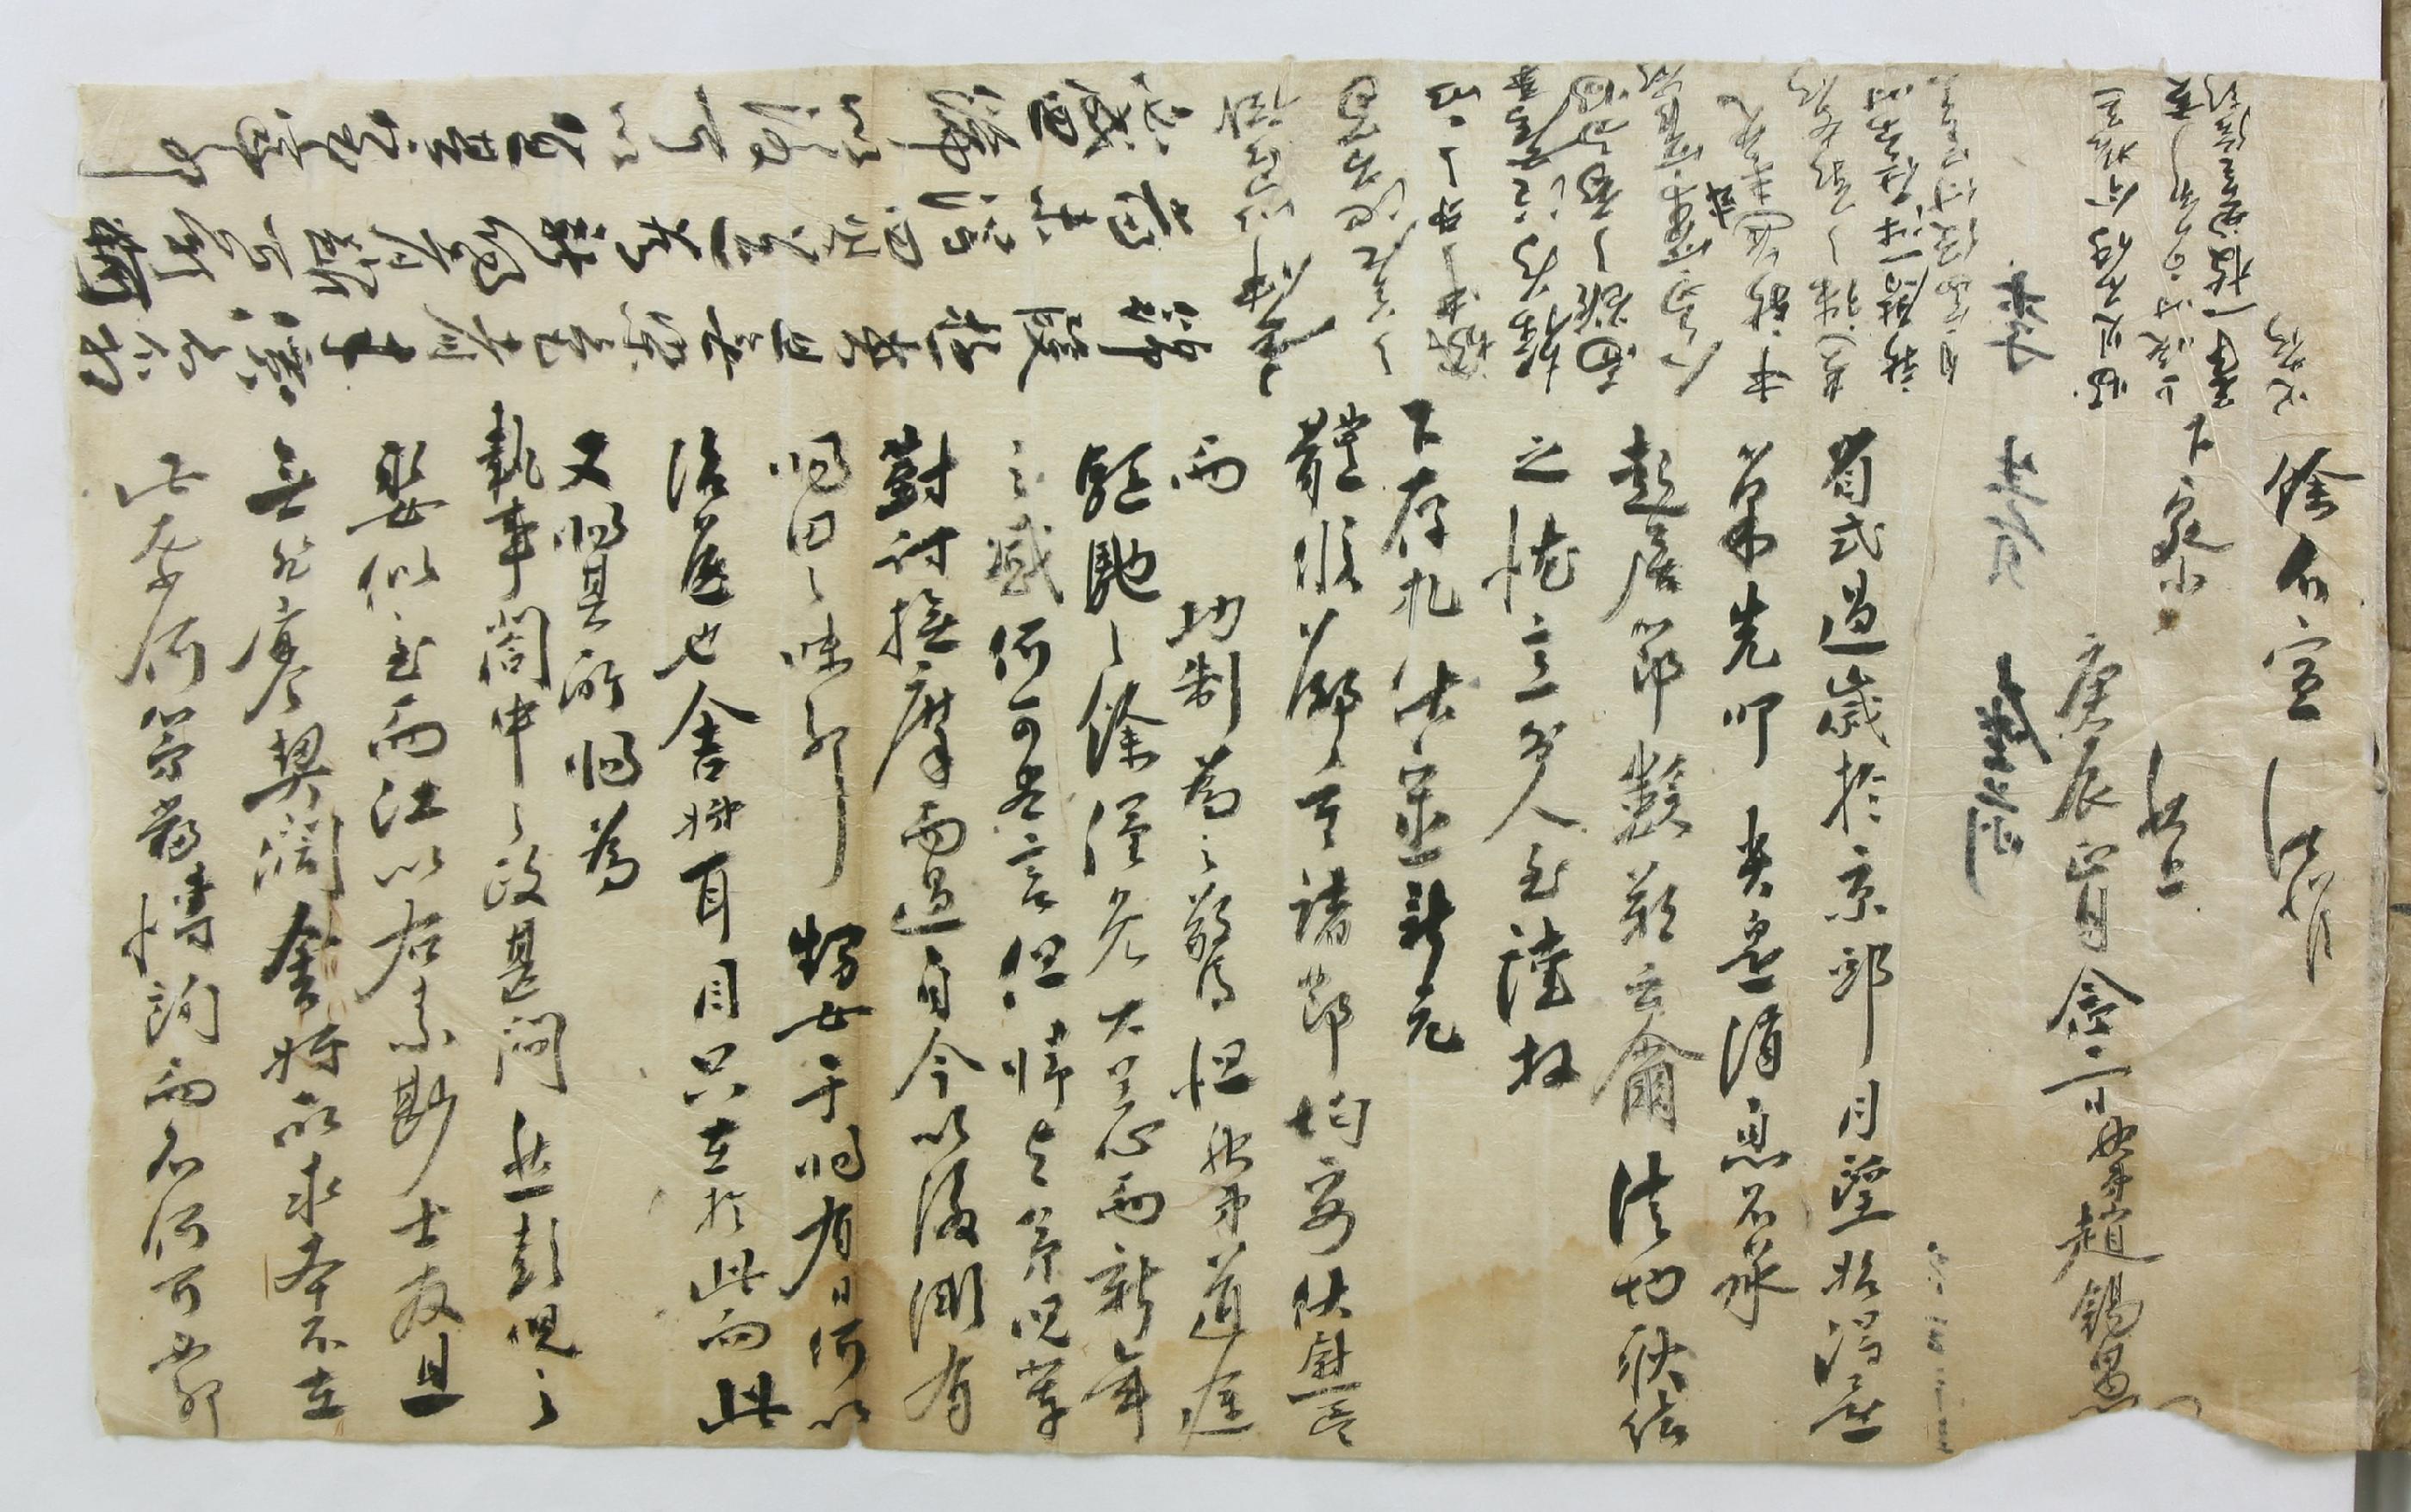 조석우(趙錫愚)가 1760년에 형뻘되는 이(李)생원에게 집안의 사정을 털어놓으며 쓴 편지